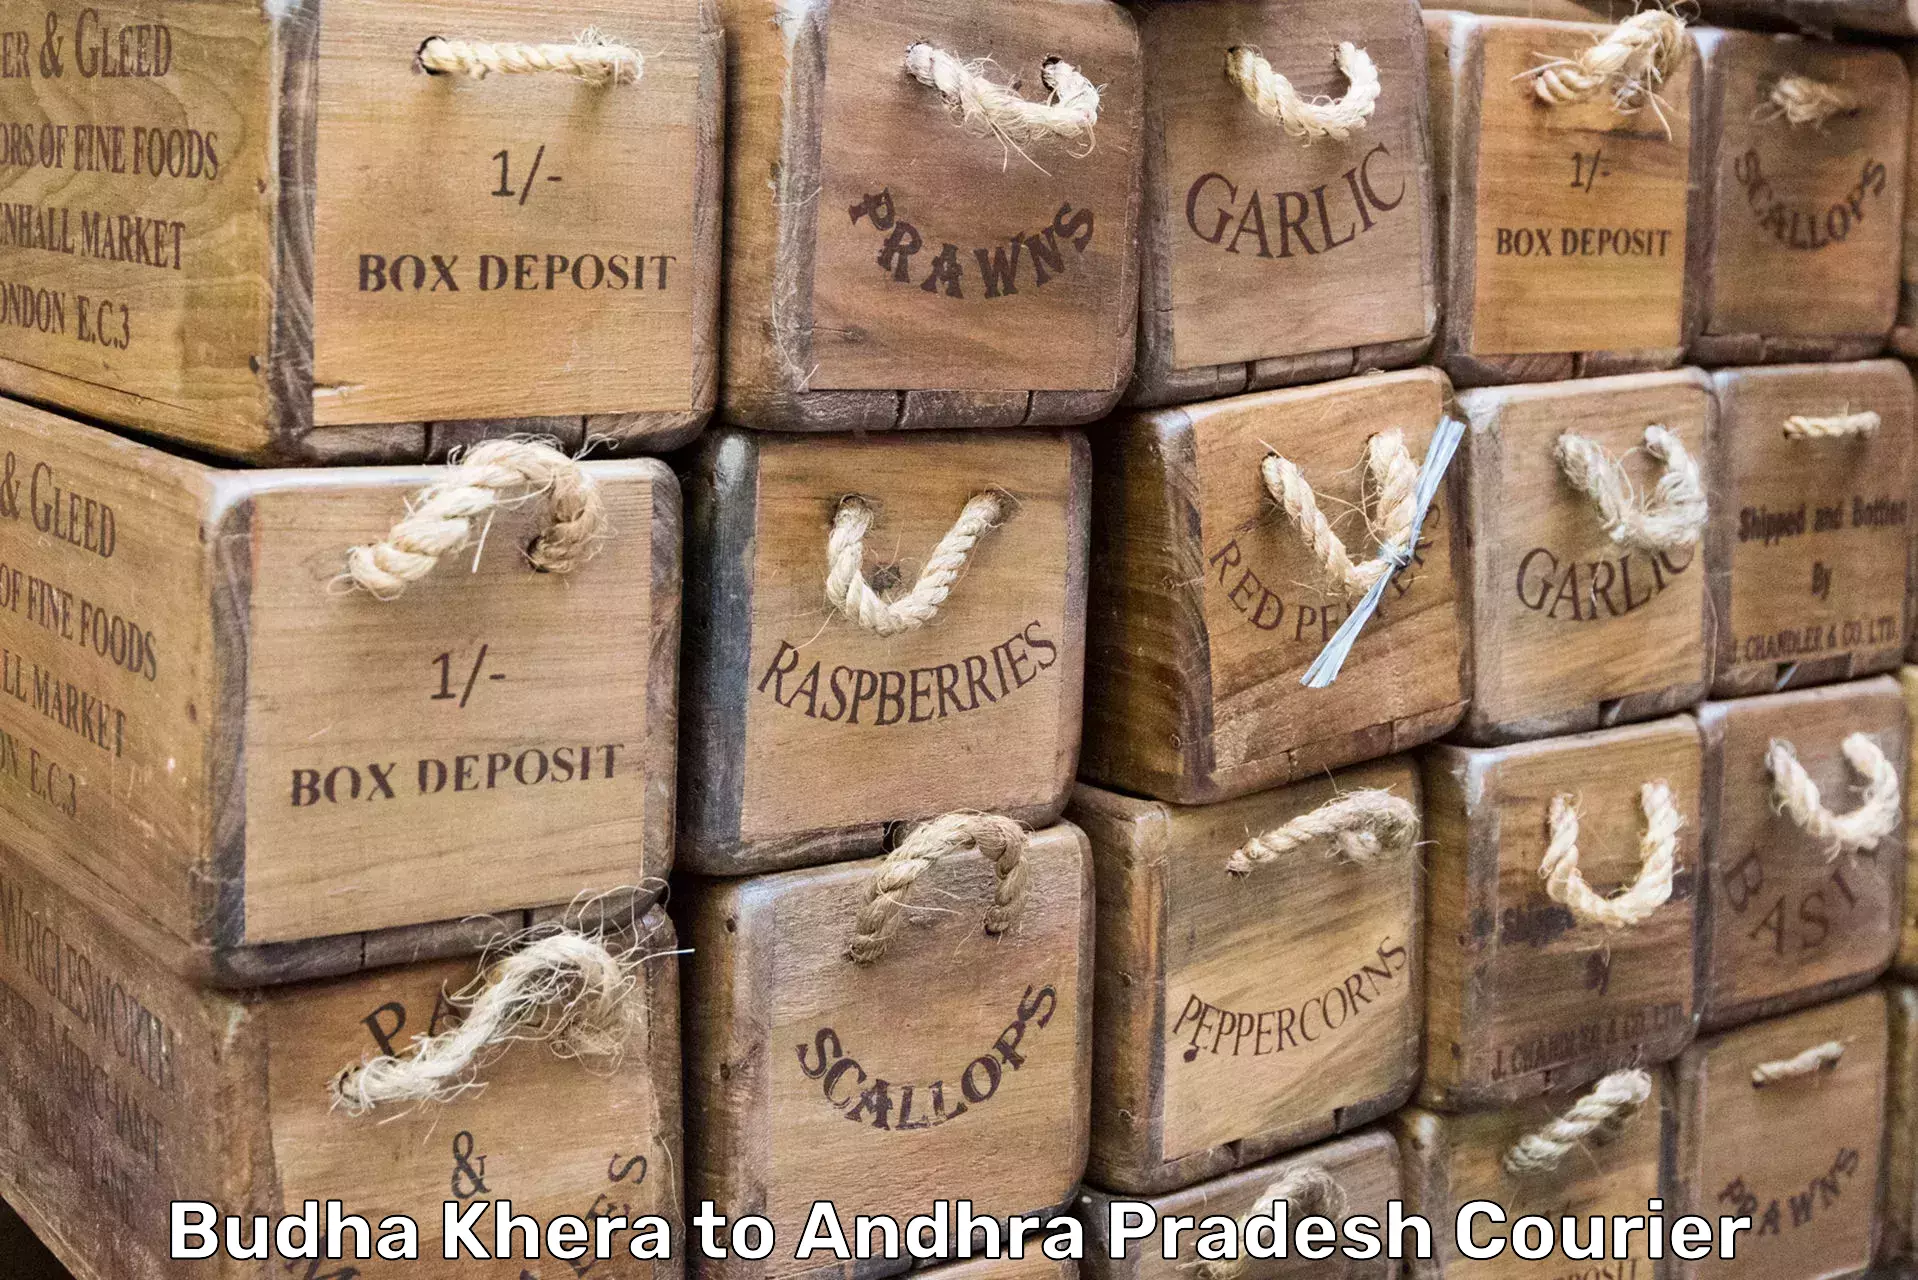 Furniture delivery service Budha Khera to Allagadda